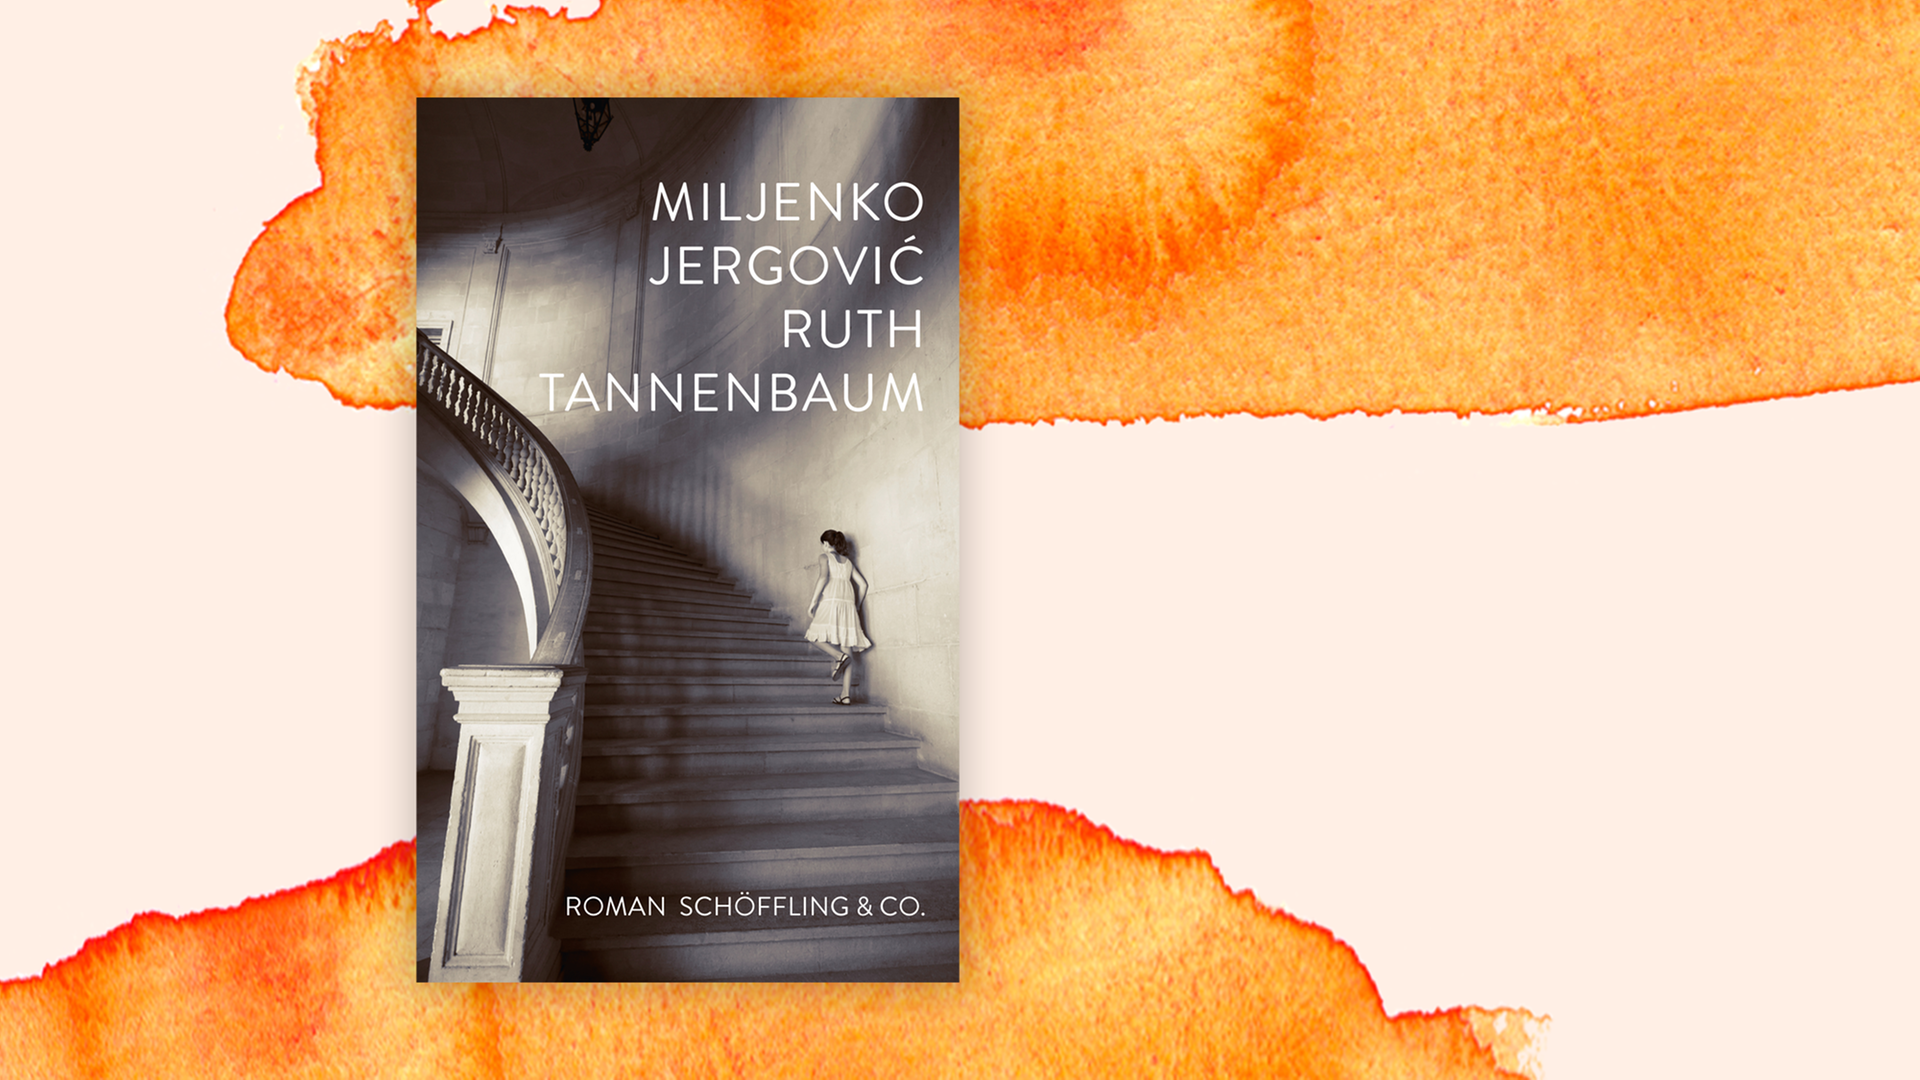 Zu sehen ist das Cover des Buches "Ruth Tannenbaum" von Miljenko Jergovic.